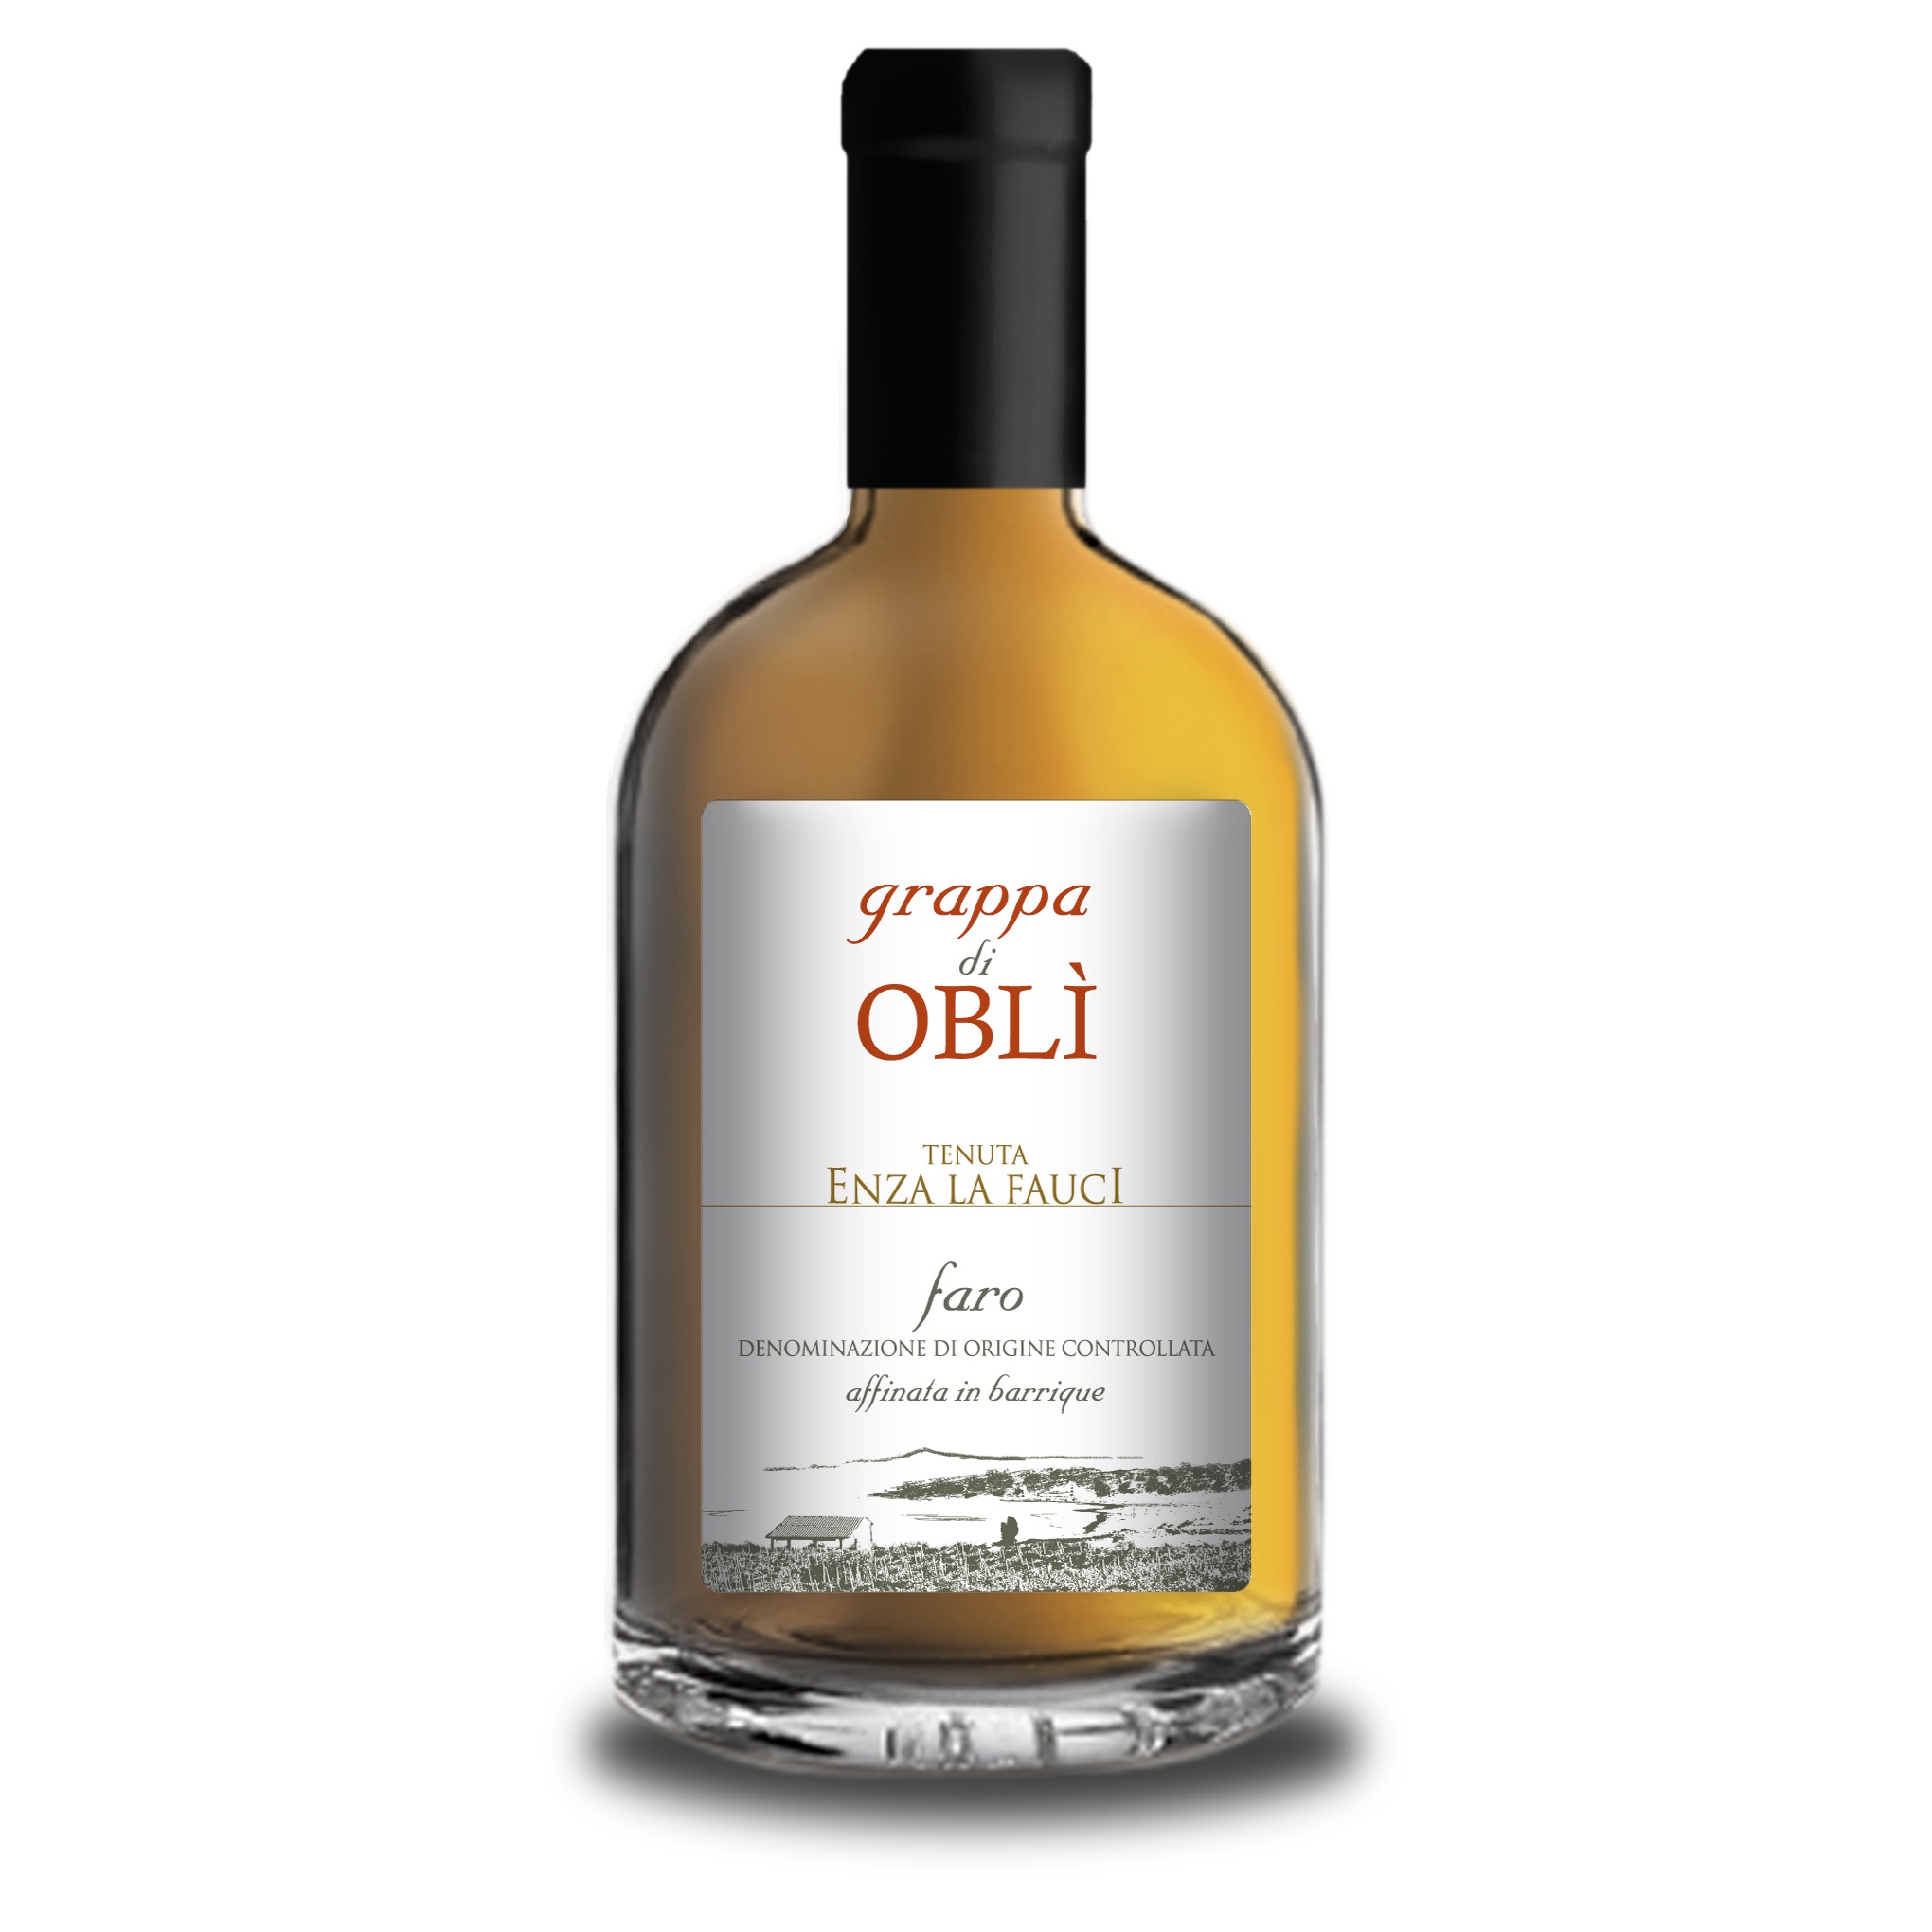 Grappa di Obli - Sicily - Faro - Spirit - Holy Wines - Malta's Leading Online Wine Store - Premium Grappa - Barricata